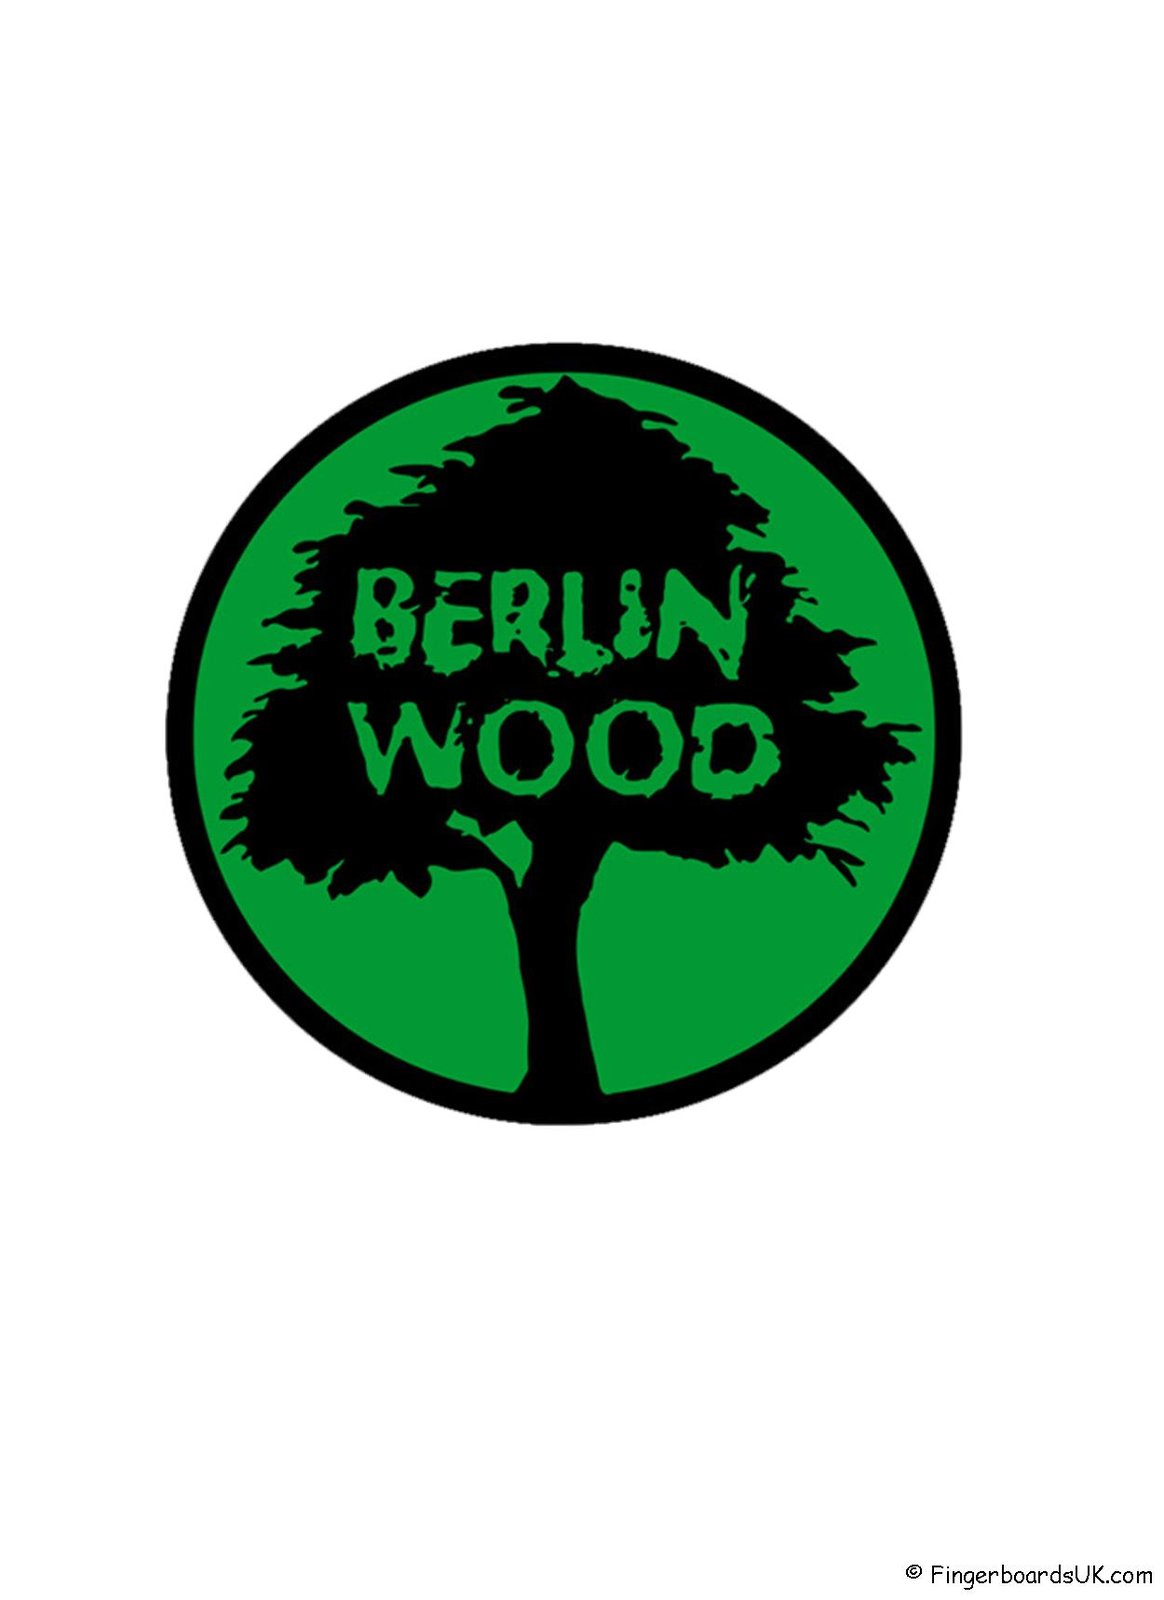 Berlinwood Sticker Green Fingerboards UK Shop 